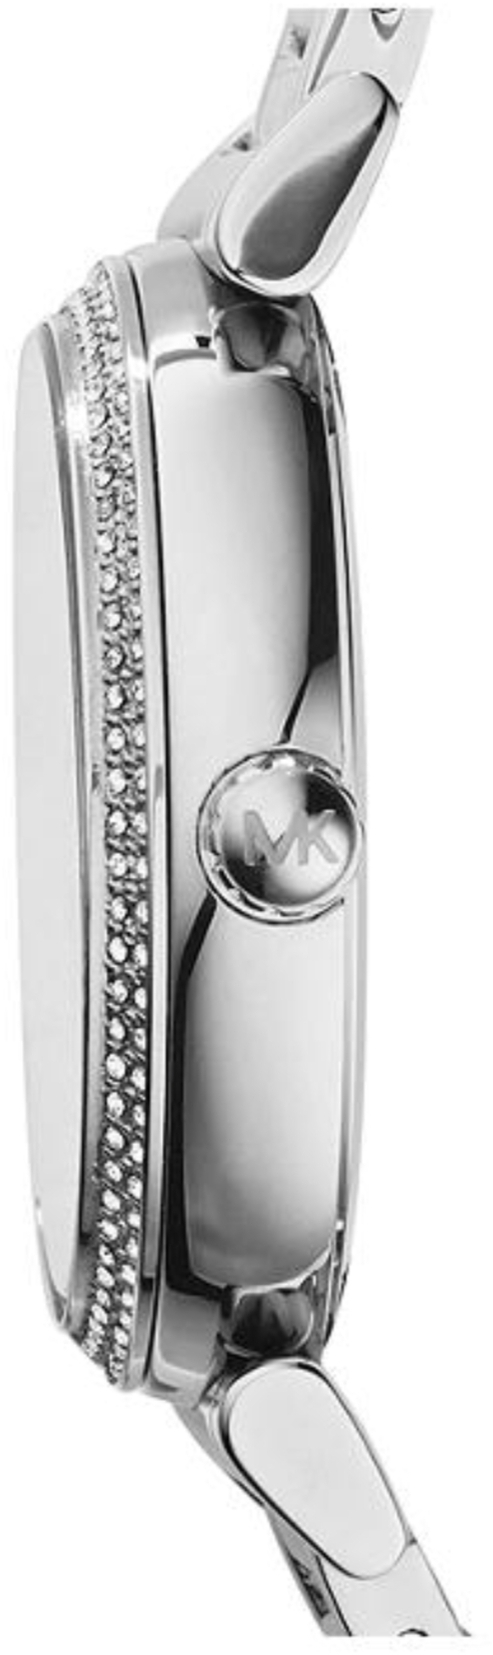 Michael Kors MK3355 Ladies Catlin Bracelet Silver Watch - Image 7 of 8